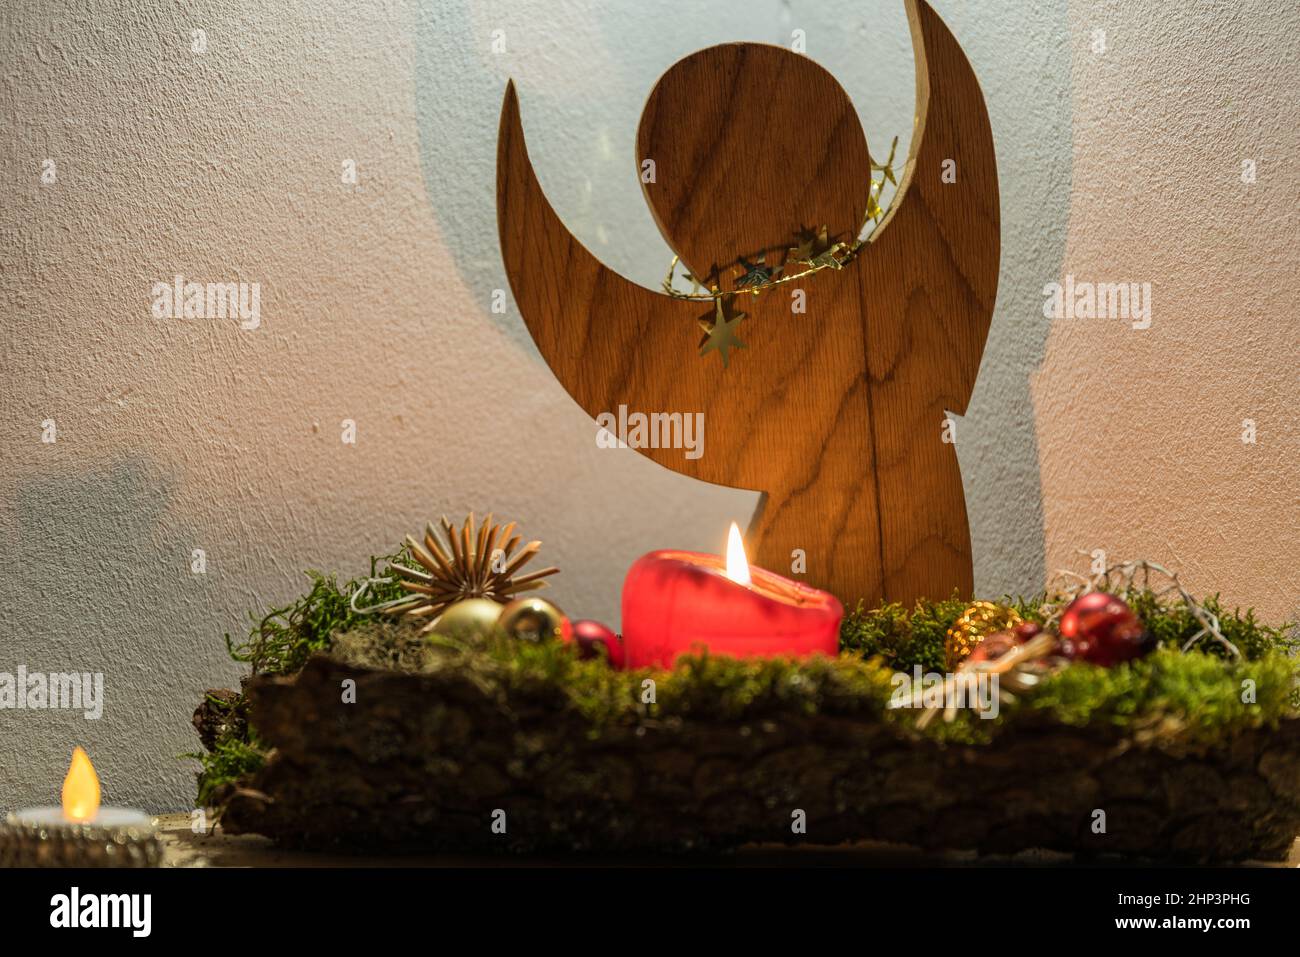 Figura de ángel hecha de madera y arreglo decorativo de Navidad - ángel de Navidad Foto de stock